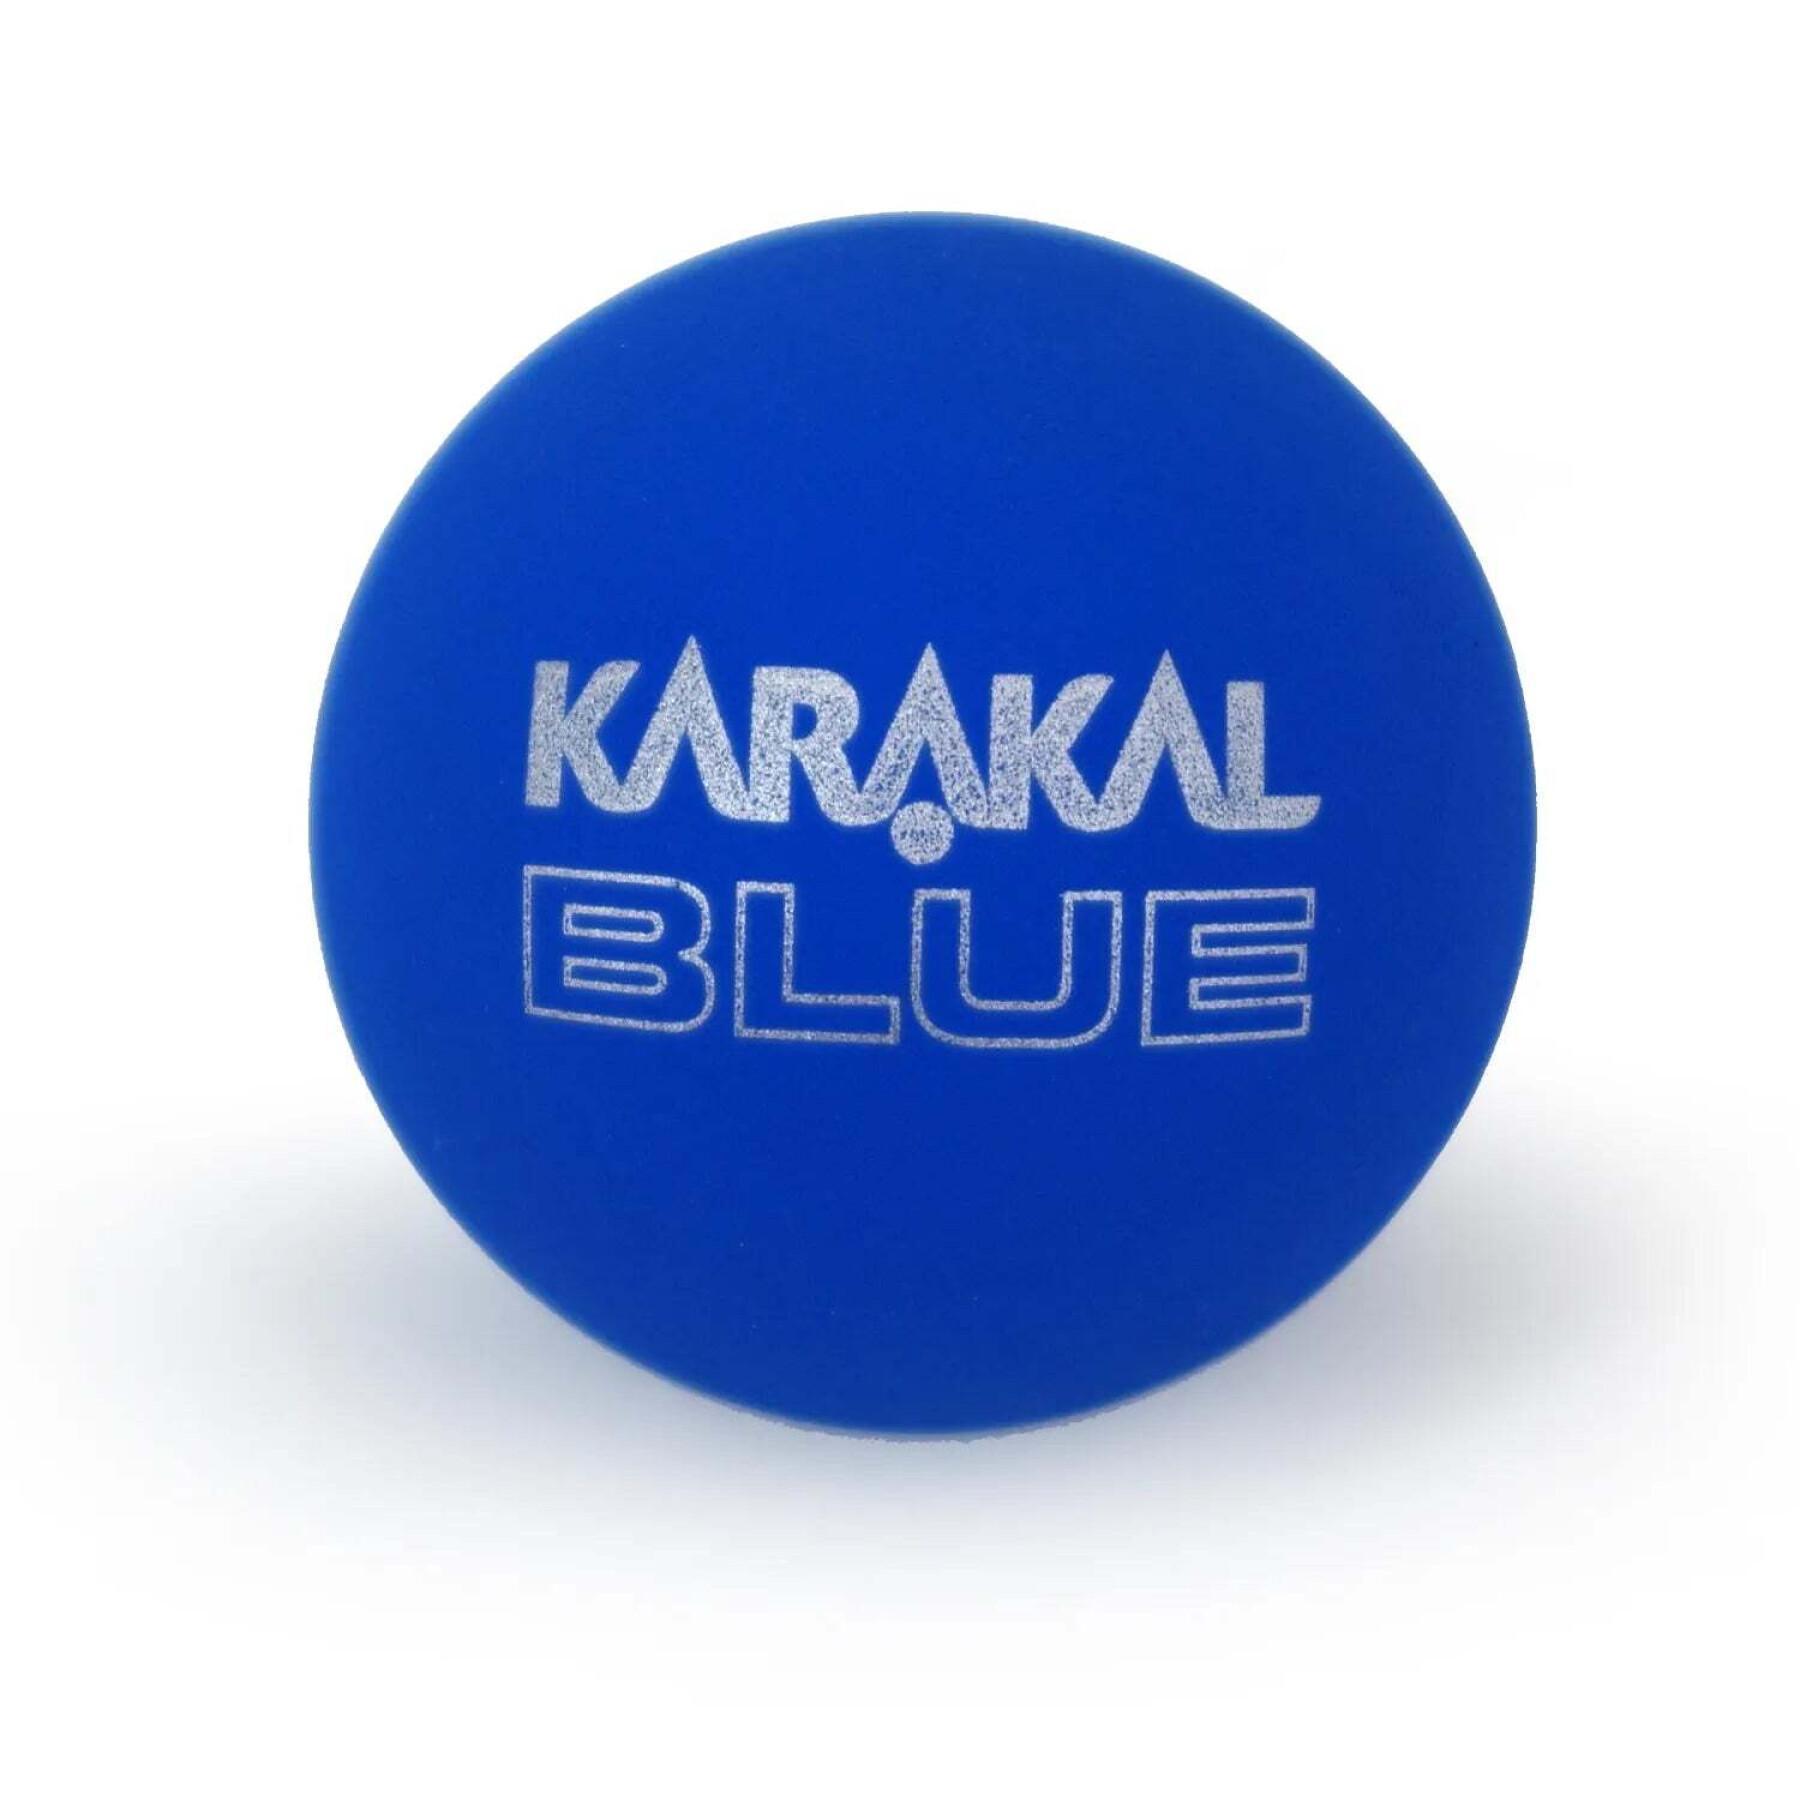 Set of 2 squash balls Karakal